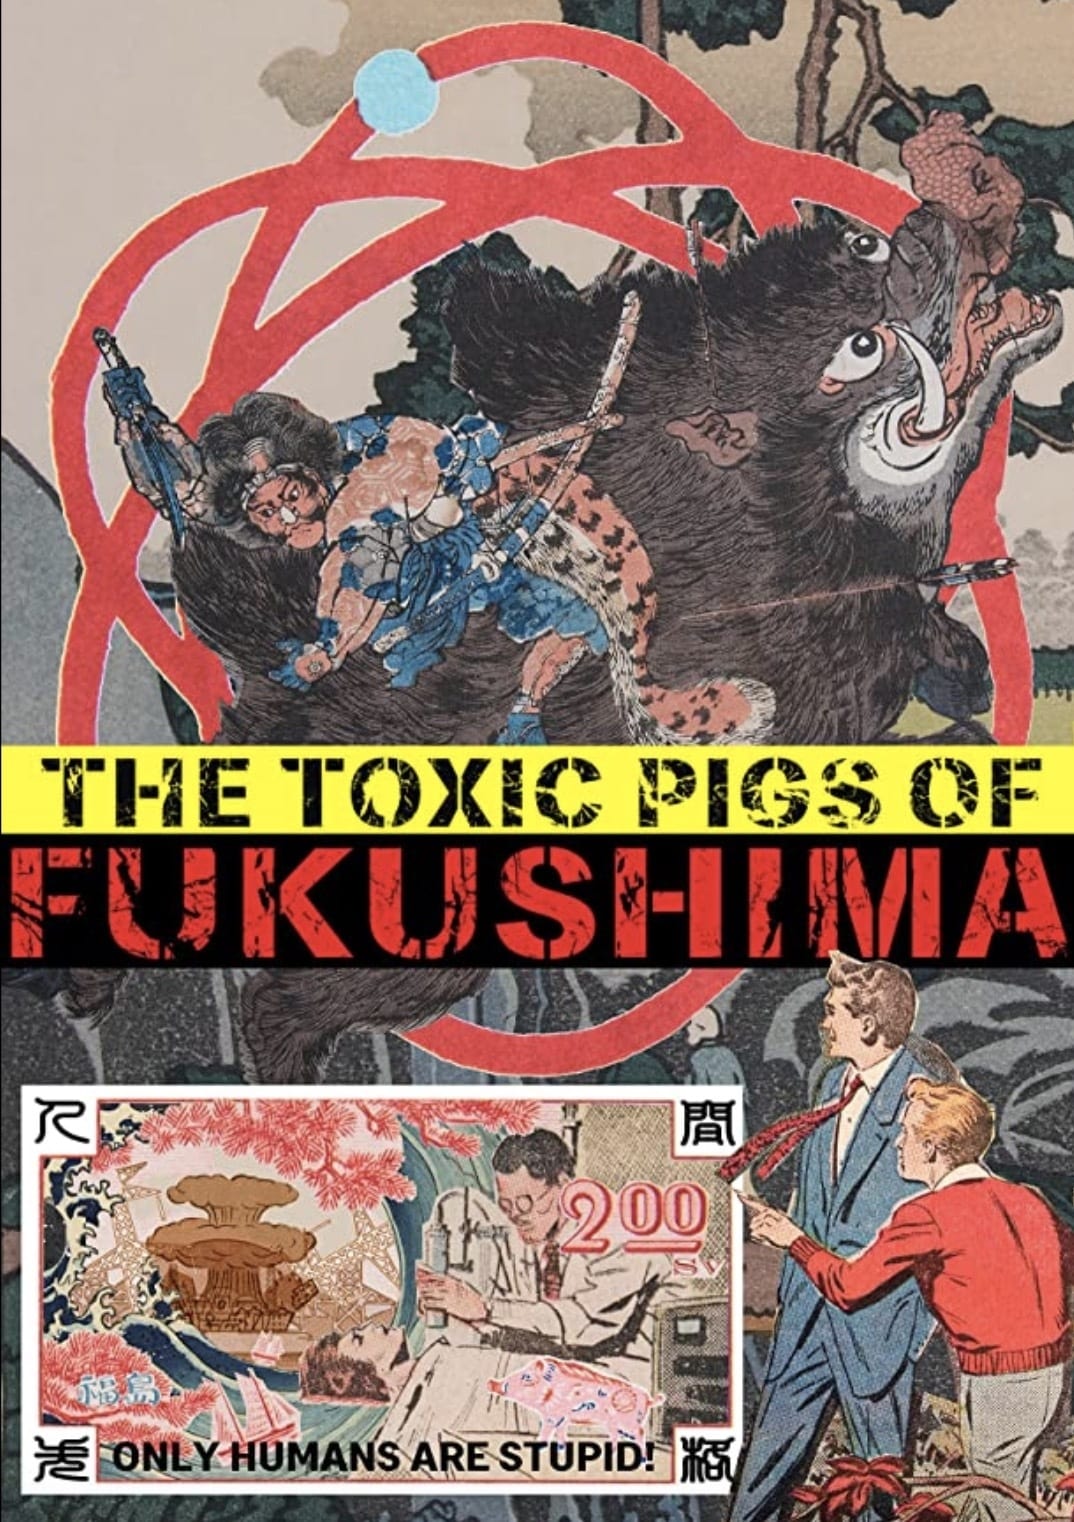 The Toxic Pigs of Fukushima